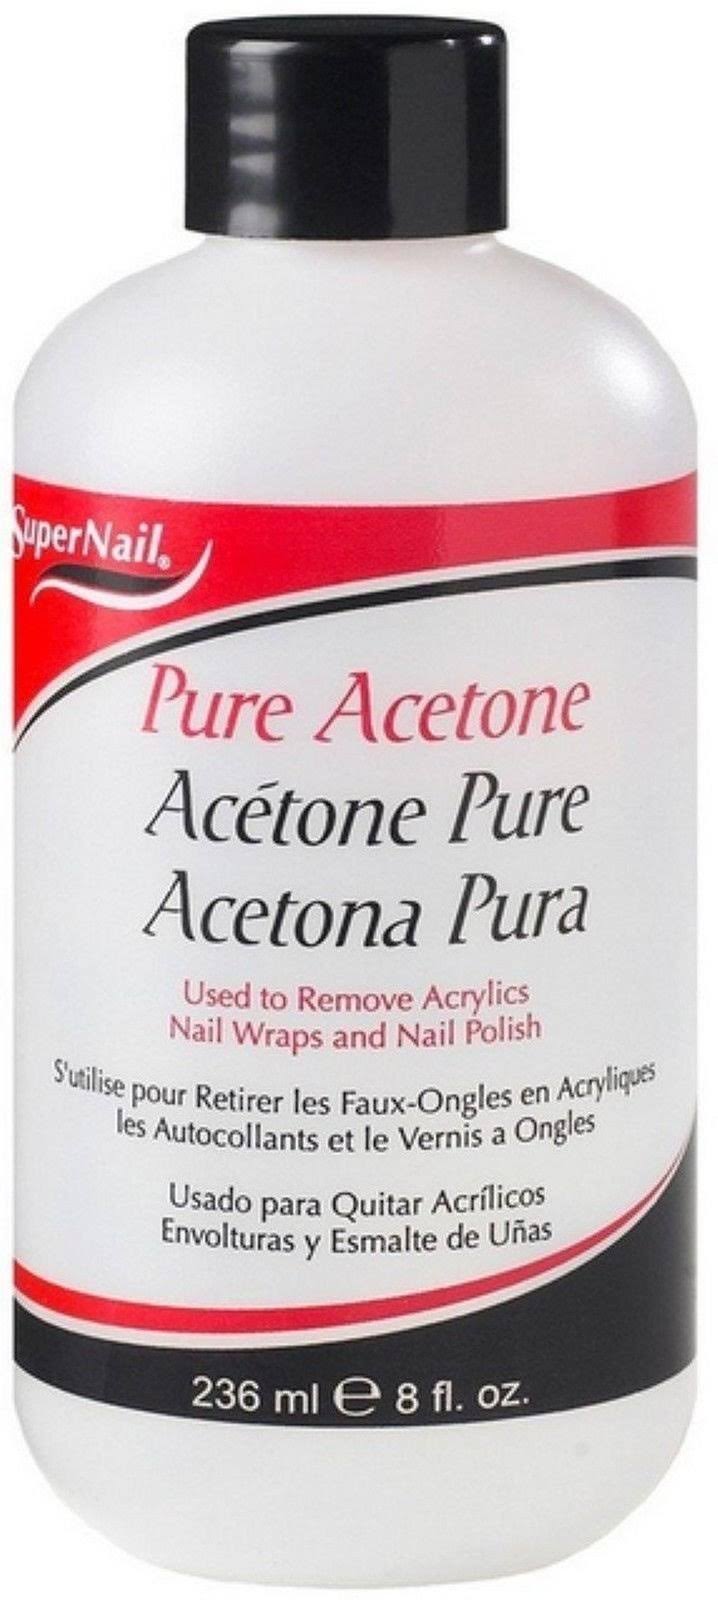 Super Nail Pure Acetone Polish Remover - 8oz